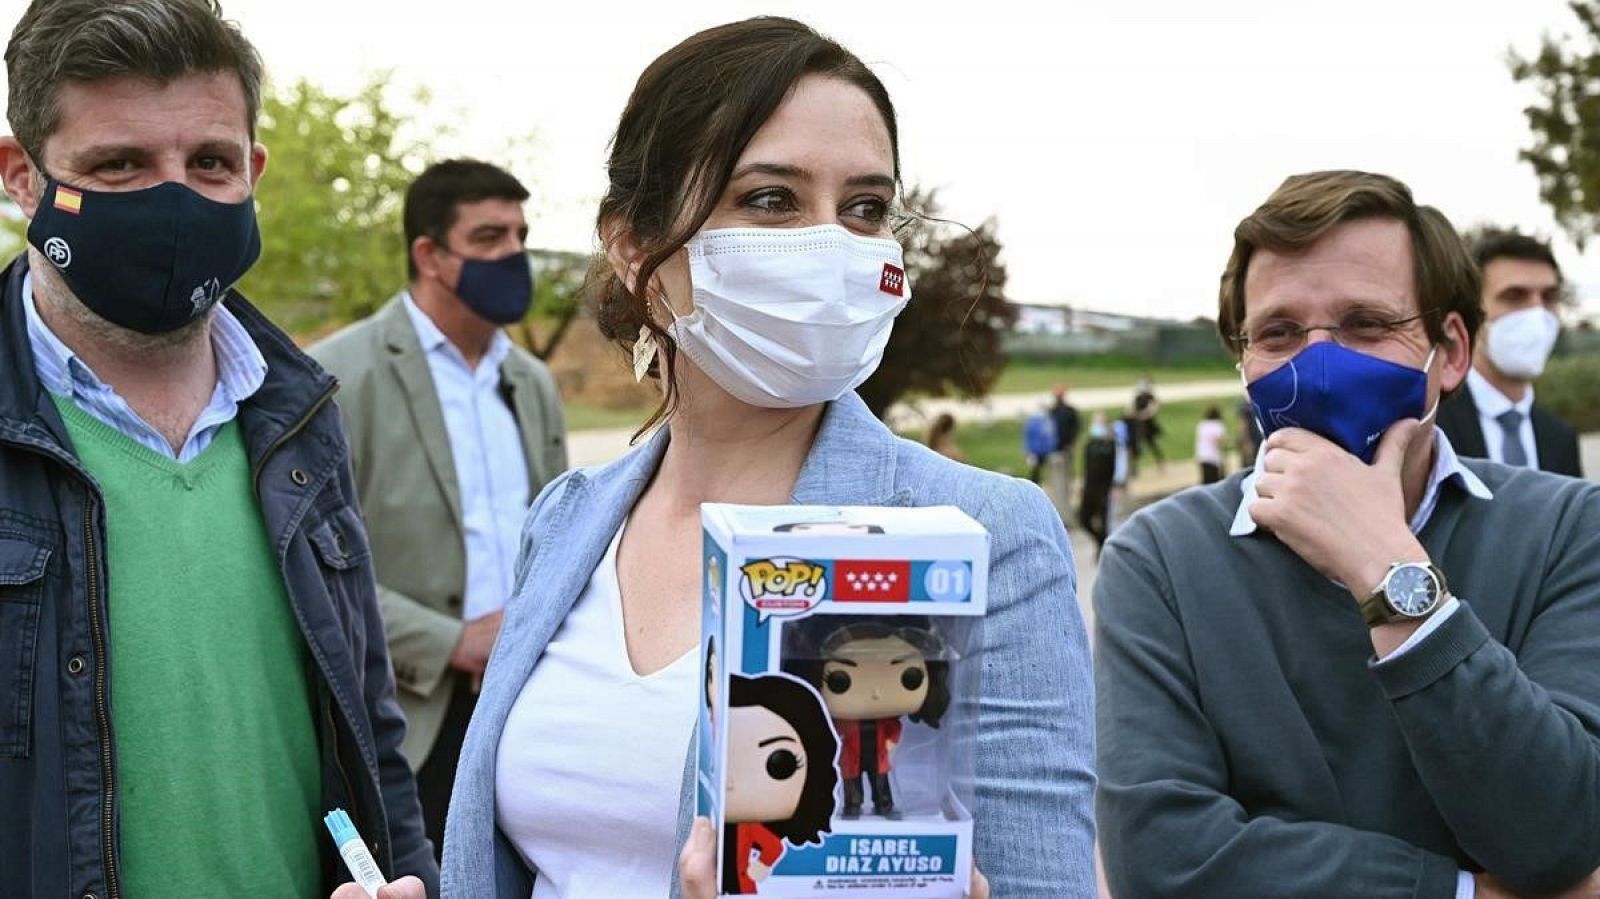 Durante su visita al Parque Juan Carlos I, una persona le regaló a Isabel Díaz Ayuso un Funko Pop de ella misma